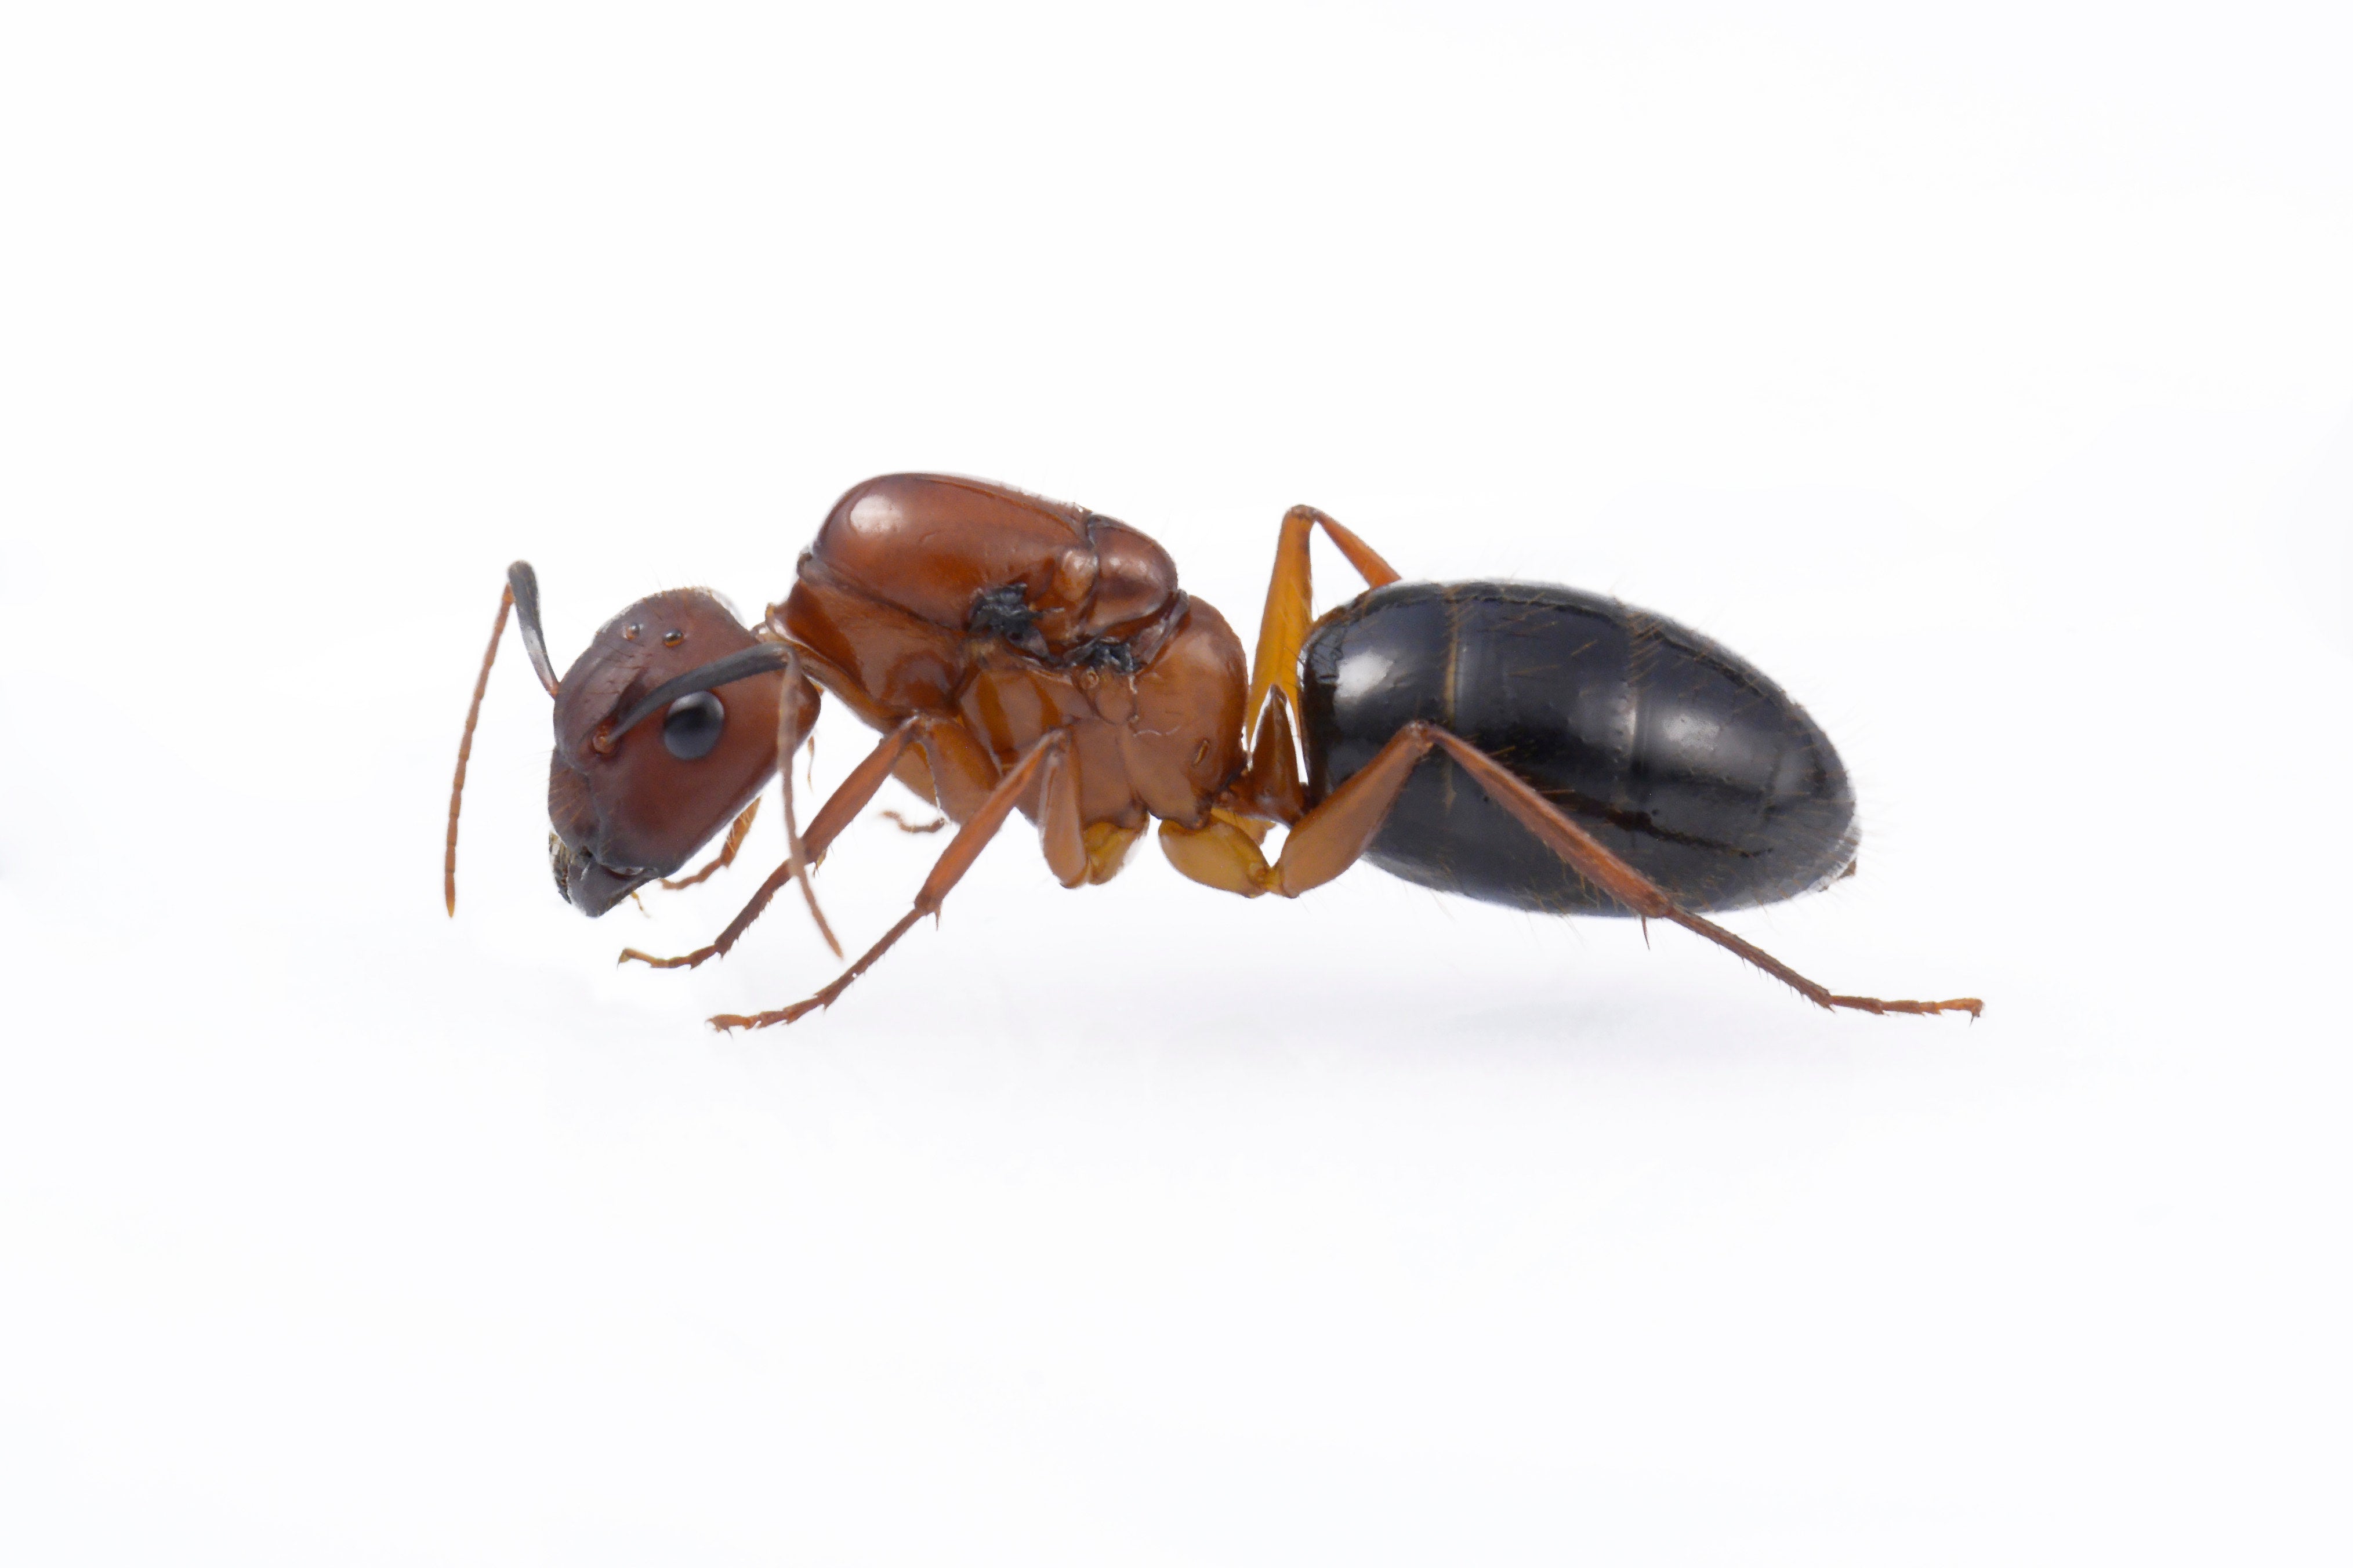 Florida Carpenter Ants (C. floridanus)